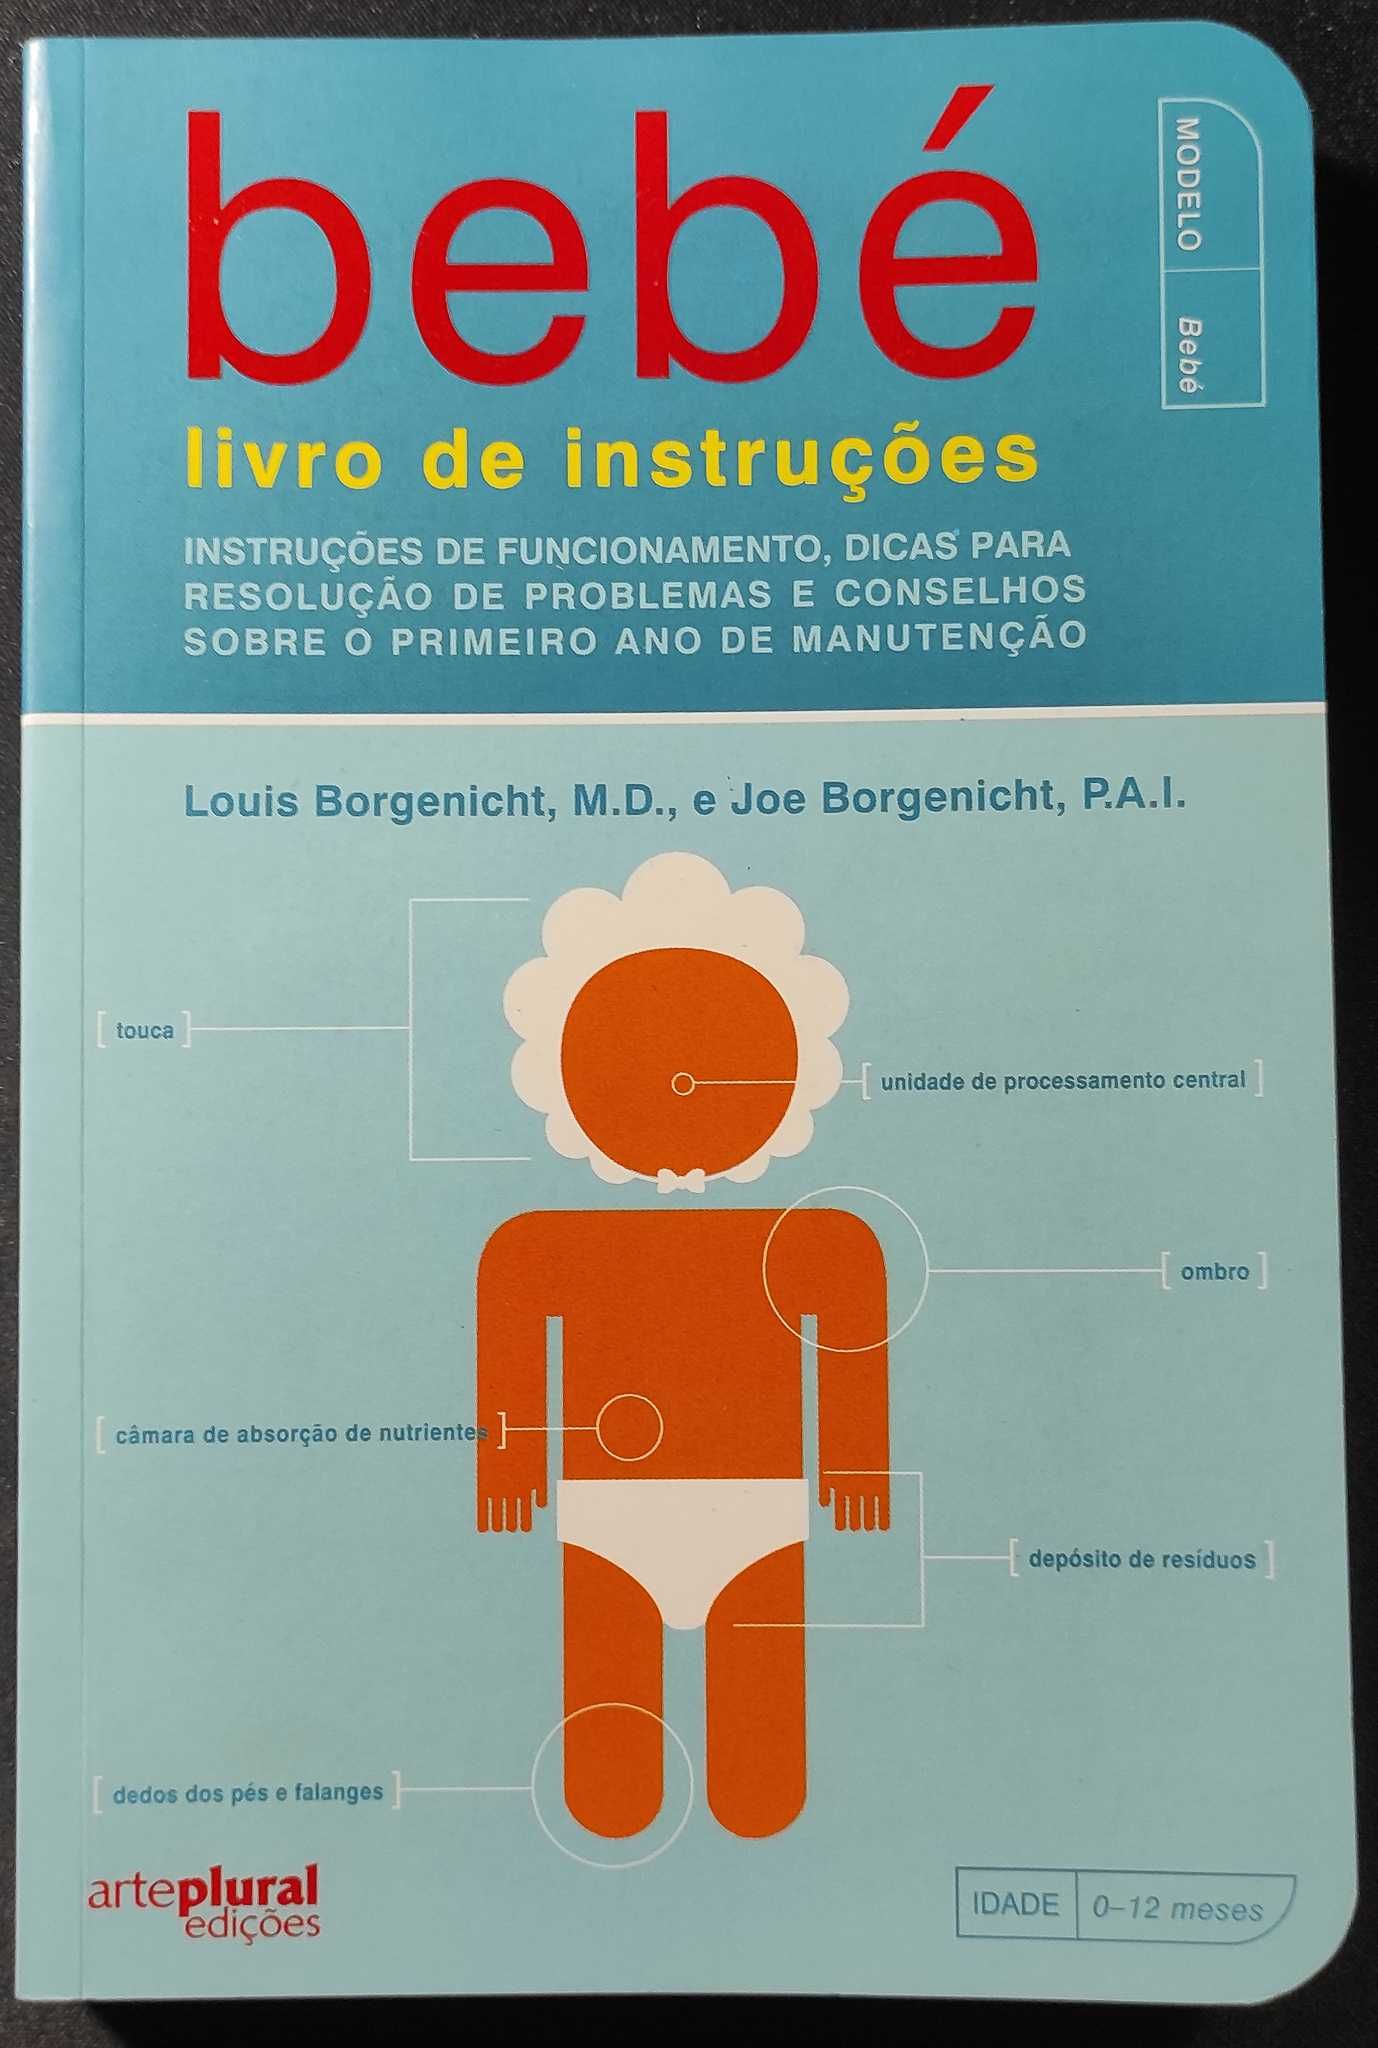 Bebé - Livro de instruções, de Louis Borgenicht e Joe Borgenicht